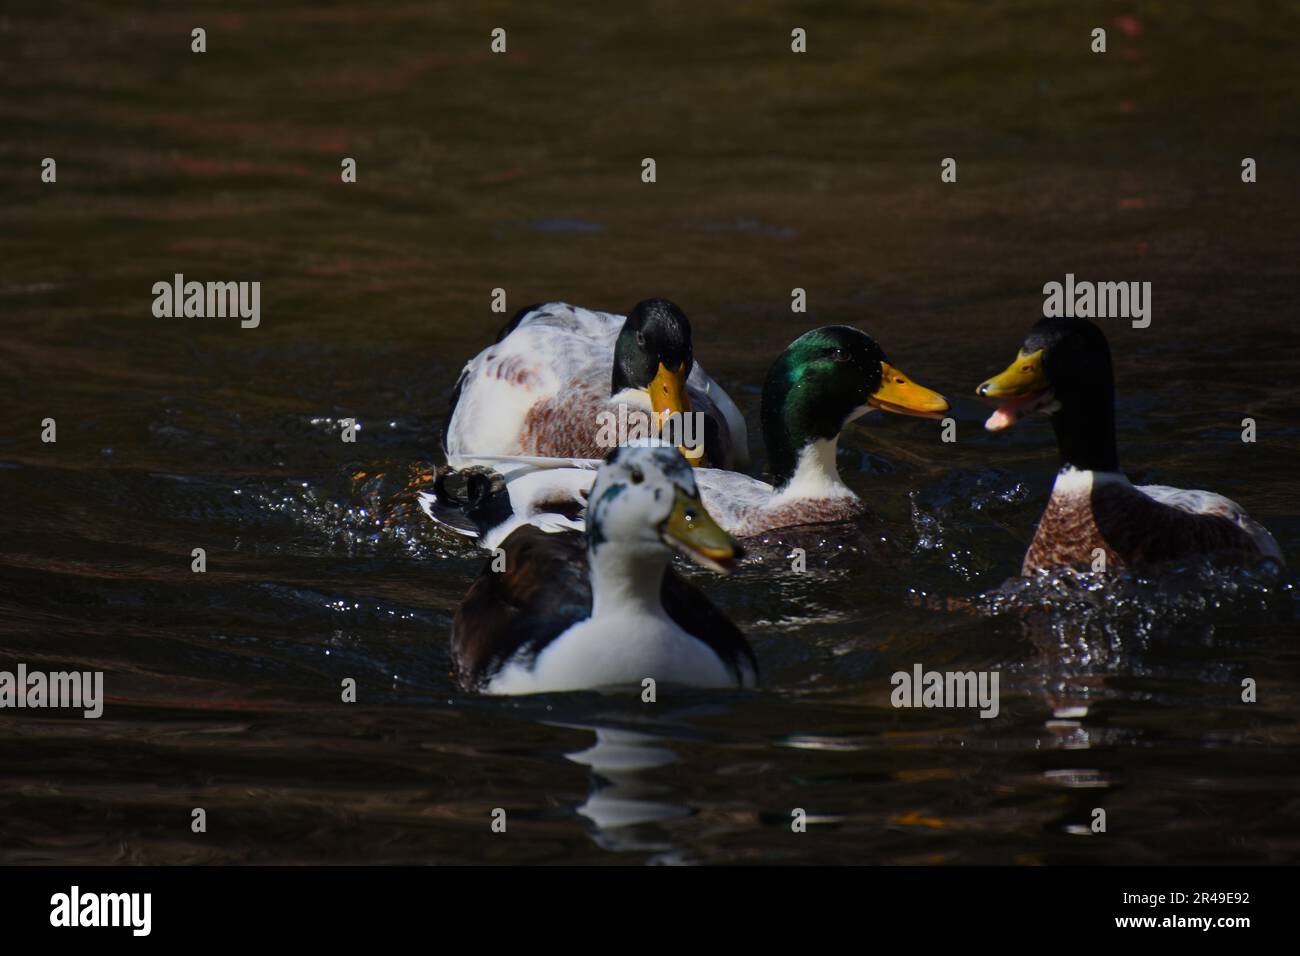 Eine Herde von Enten, die im Wasser gleiten, eine mit offenem Schnabel, während sie versucht, einen Fisch zu fangen Stockfoto